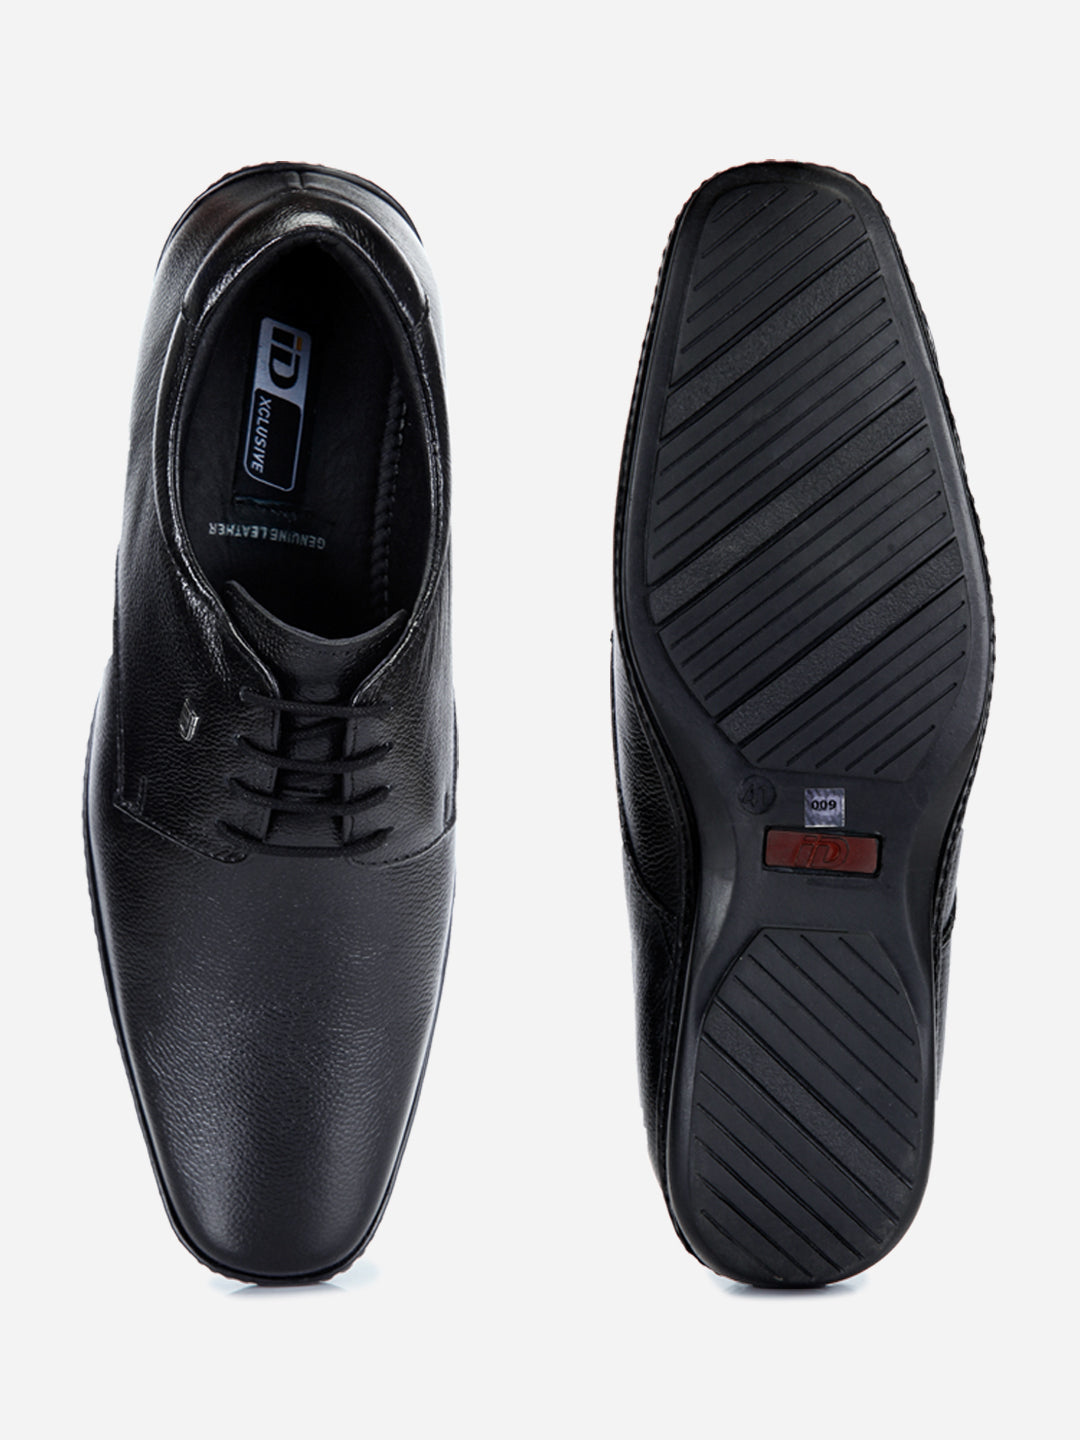 Buy Men's Black Regular Toe Lace Up Formal (ID2165) Online